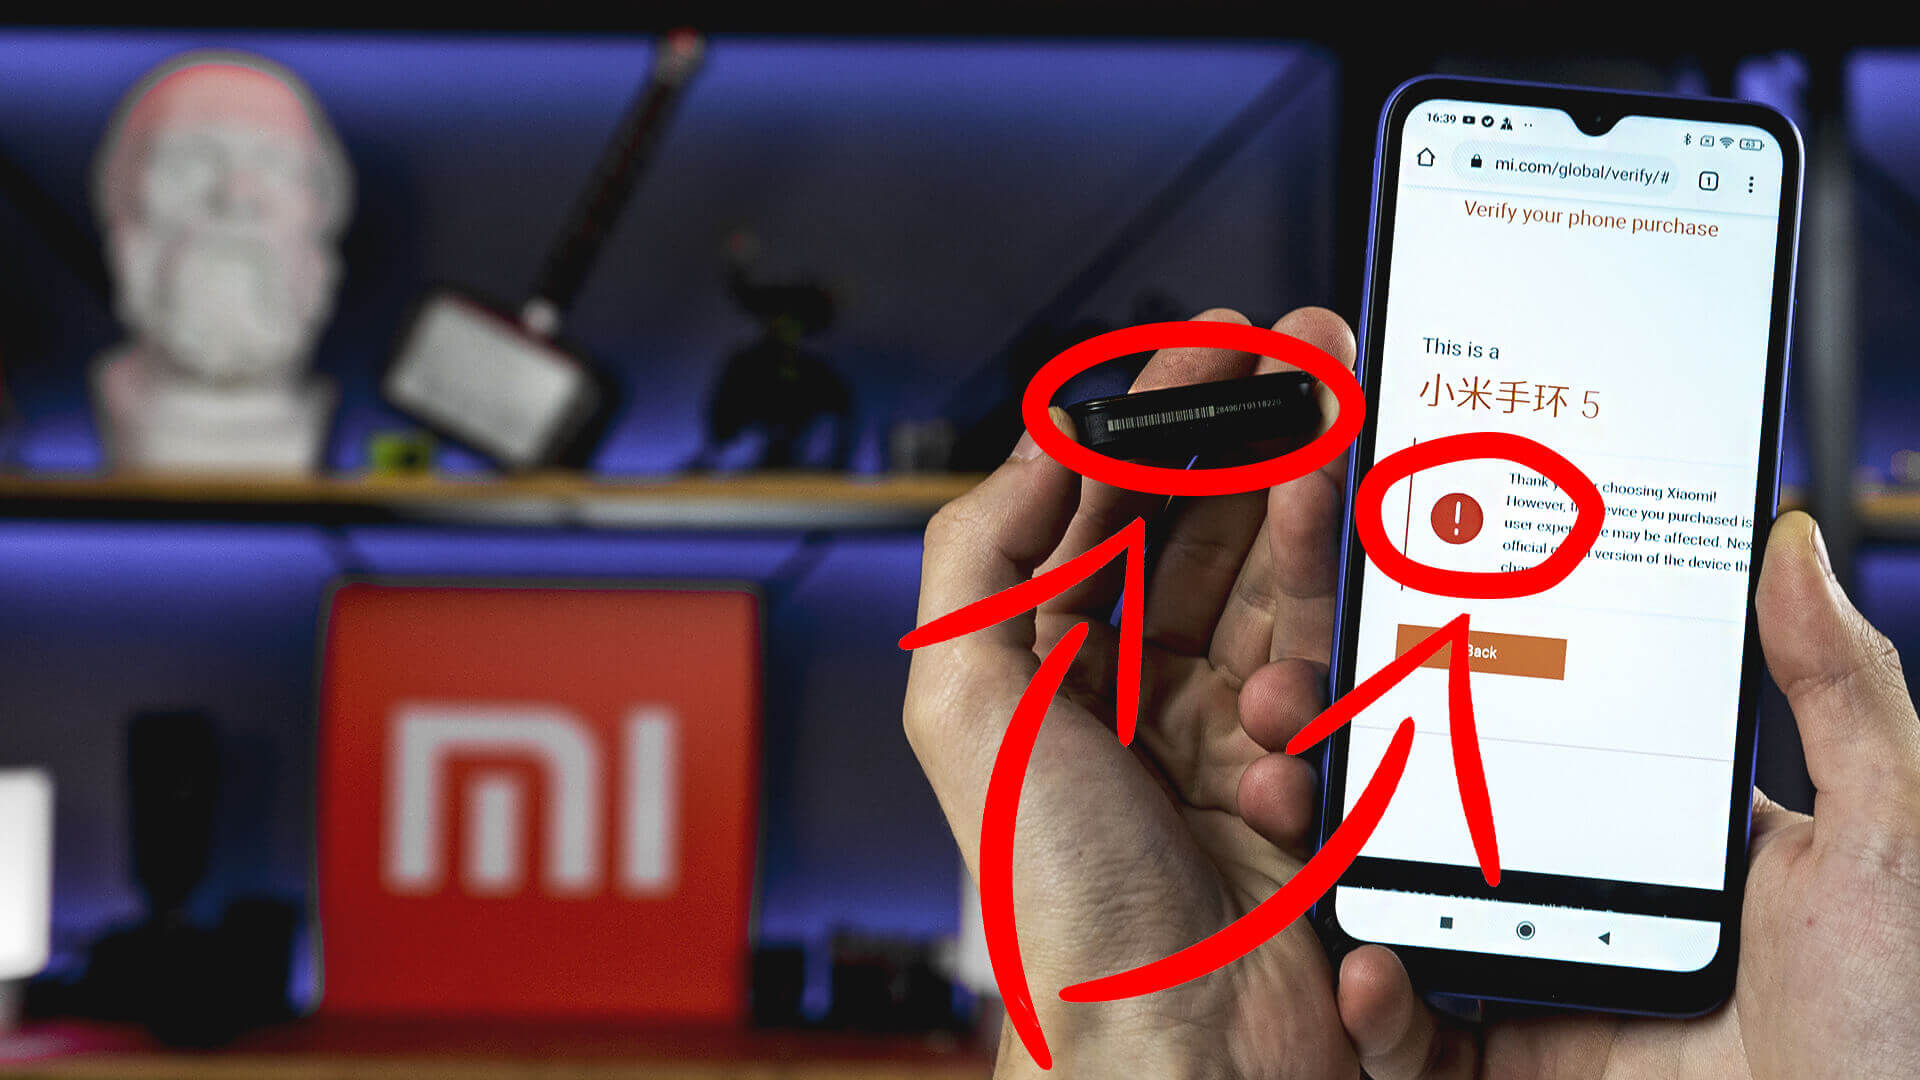 Как проверить Xiaomi Mi Band 5 на оригинальность